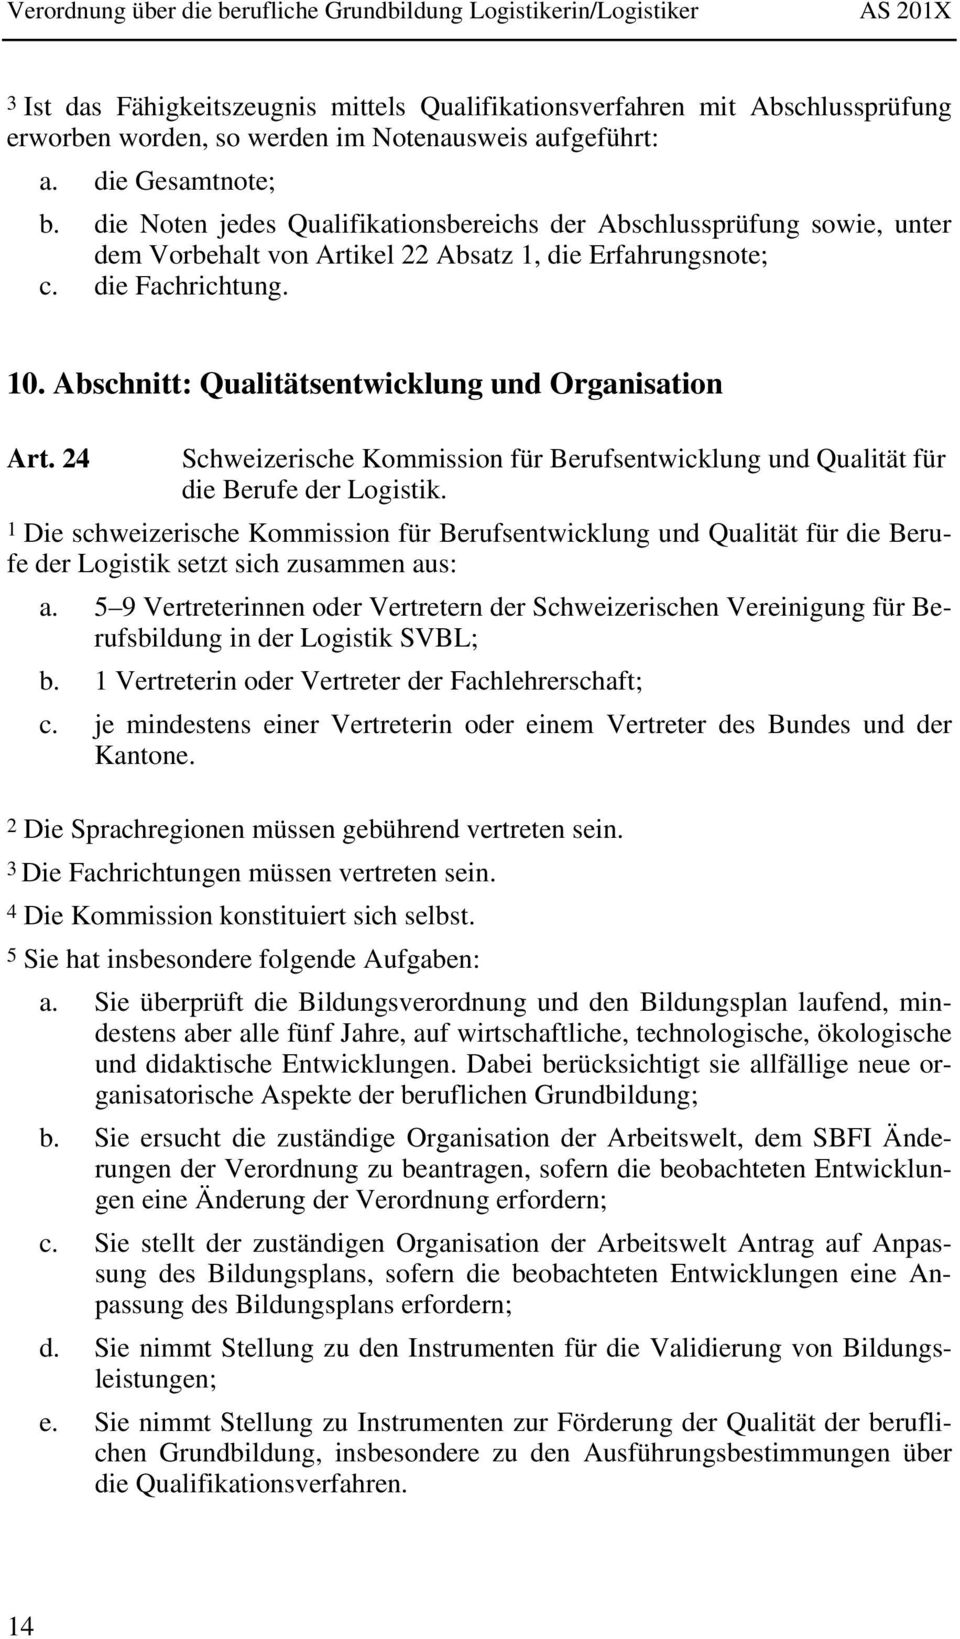 Abschnitt: Qualitätsentwicklung und Organisation Art. 24 Schweizerische Kommission für Berufsentwicklung und Qualität für die Berufe der Logistik.